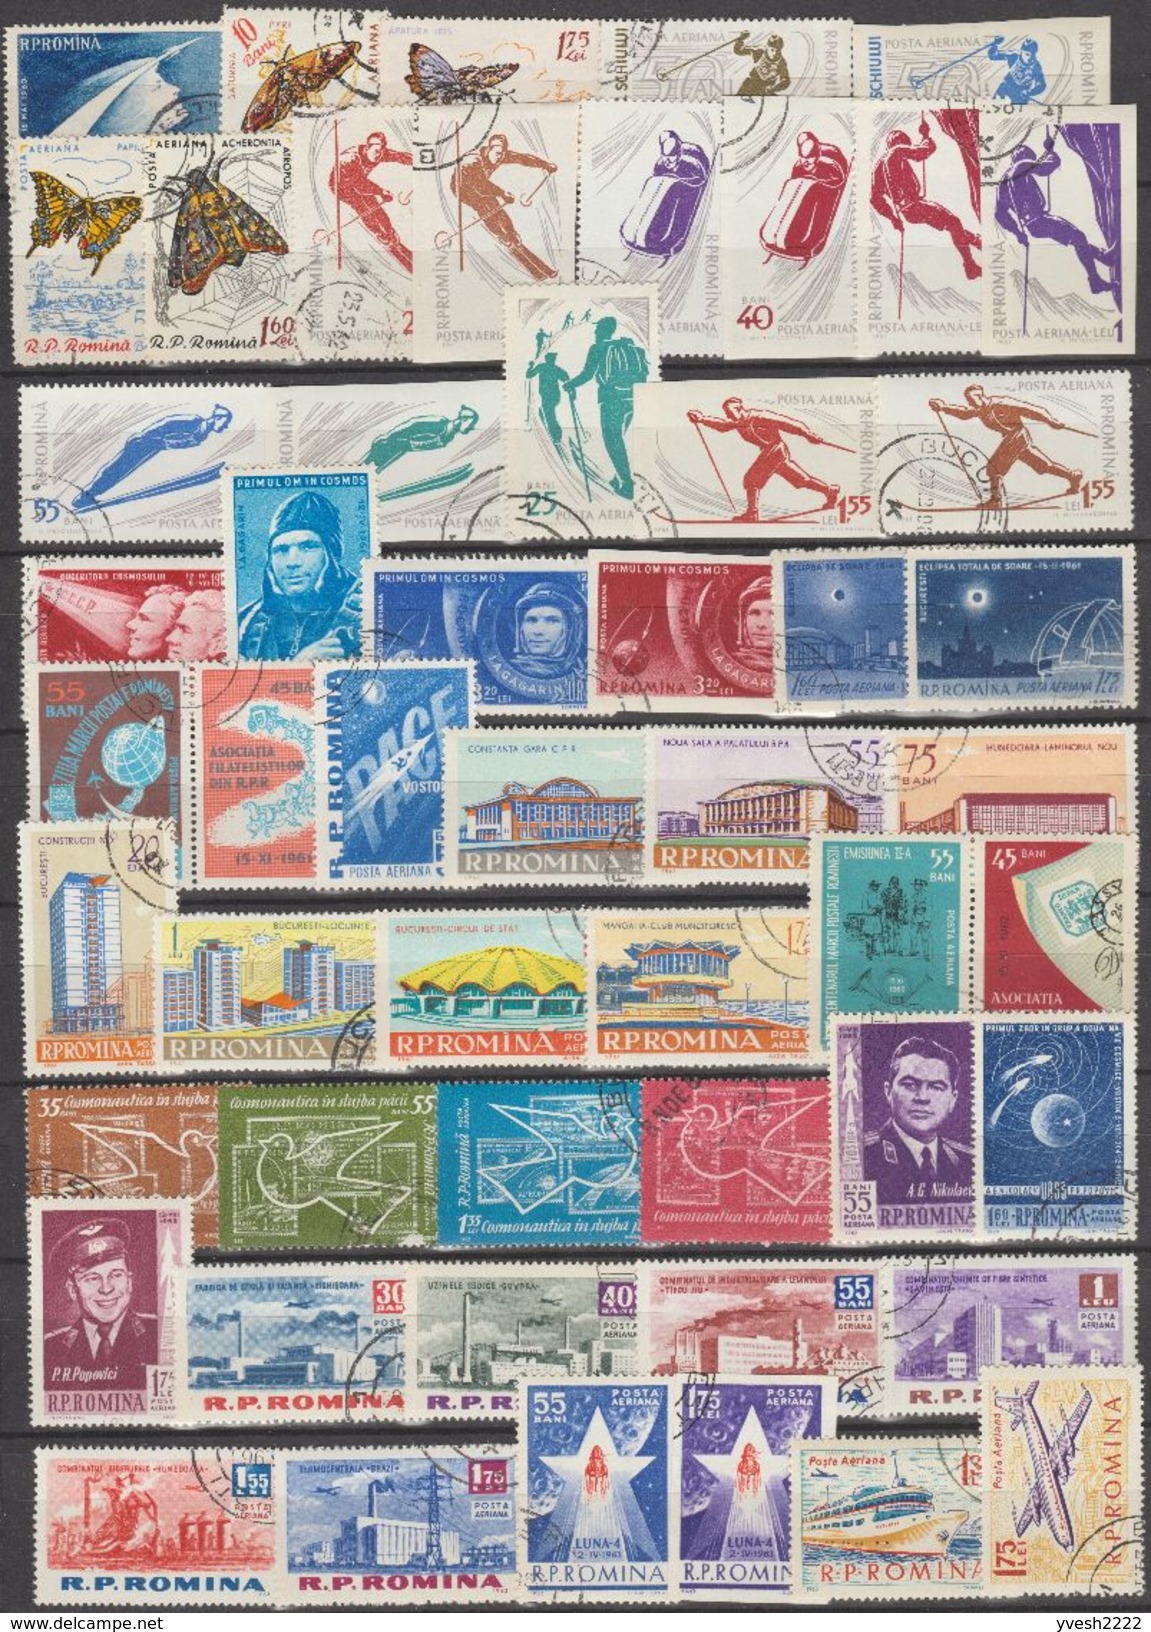 Roumanie. Petit lot de timbres oblitérés